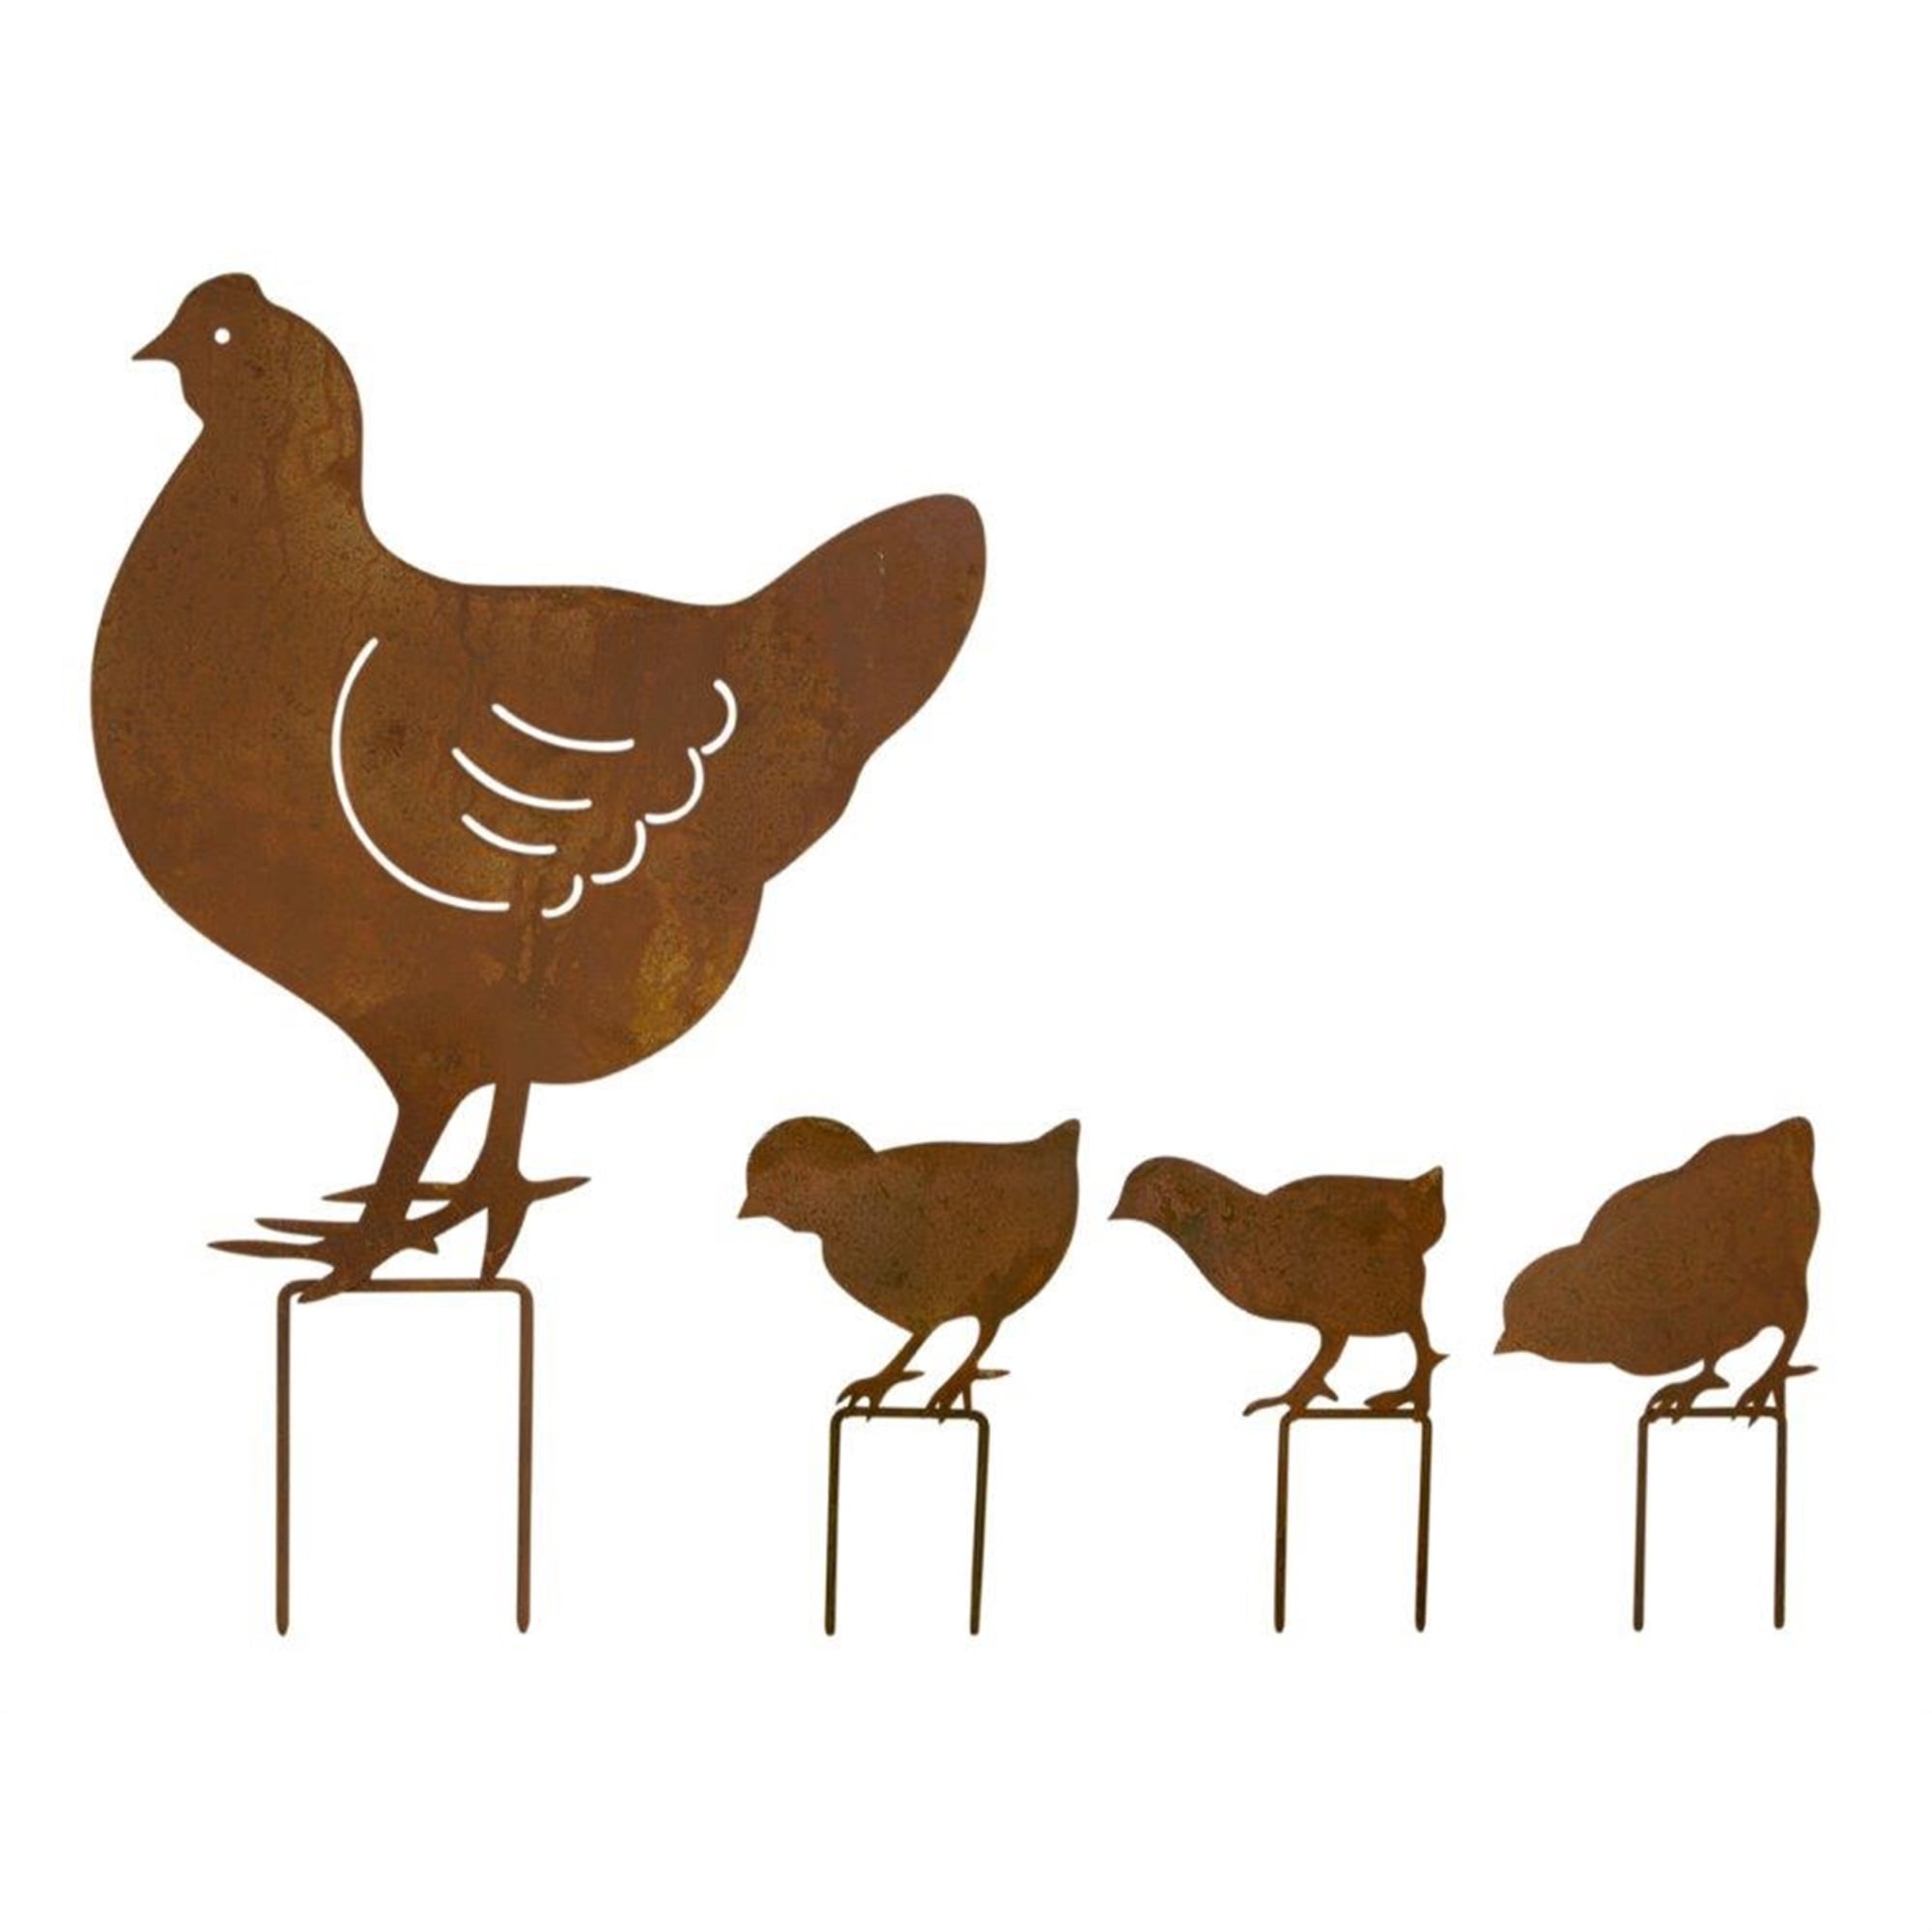 Chicken Family Lawn Stake (Set of 4) 5"L x 7"H, 12.25"L x 18.5"H Iron